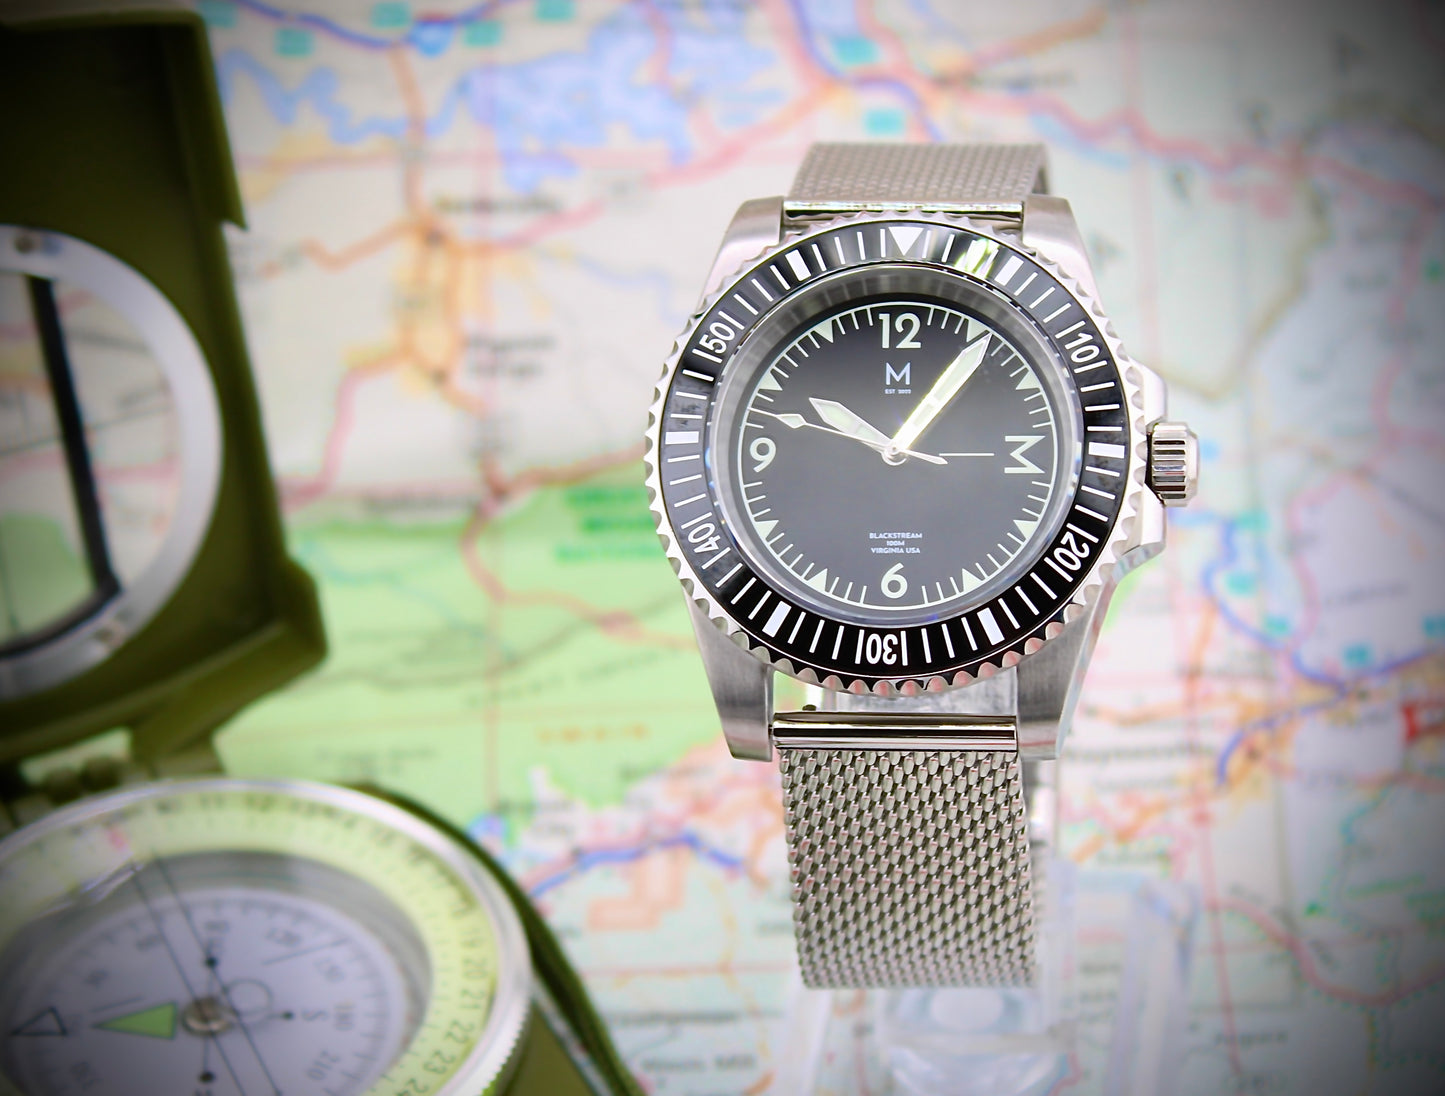 Explore The Blackstream Adventurer Watch by Monterey Watch Co